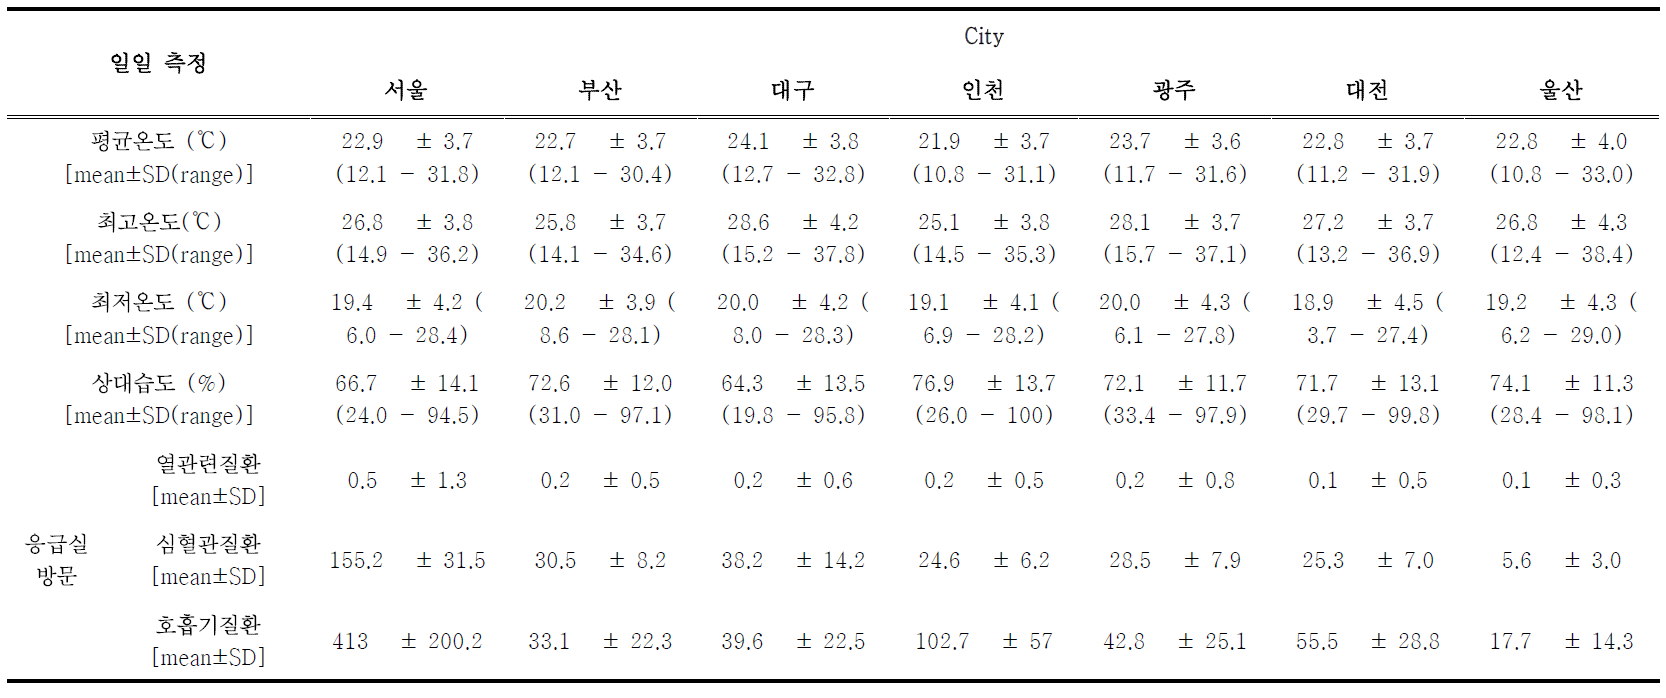 2007~2013년 따뜻한 계절(5~9월) 동안의 7대 도시 기온, 습도 및 응급실 방문 기술 통계량